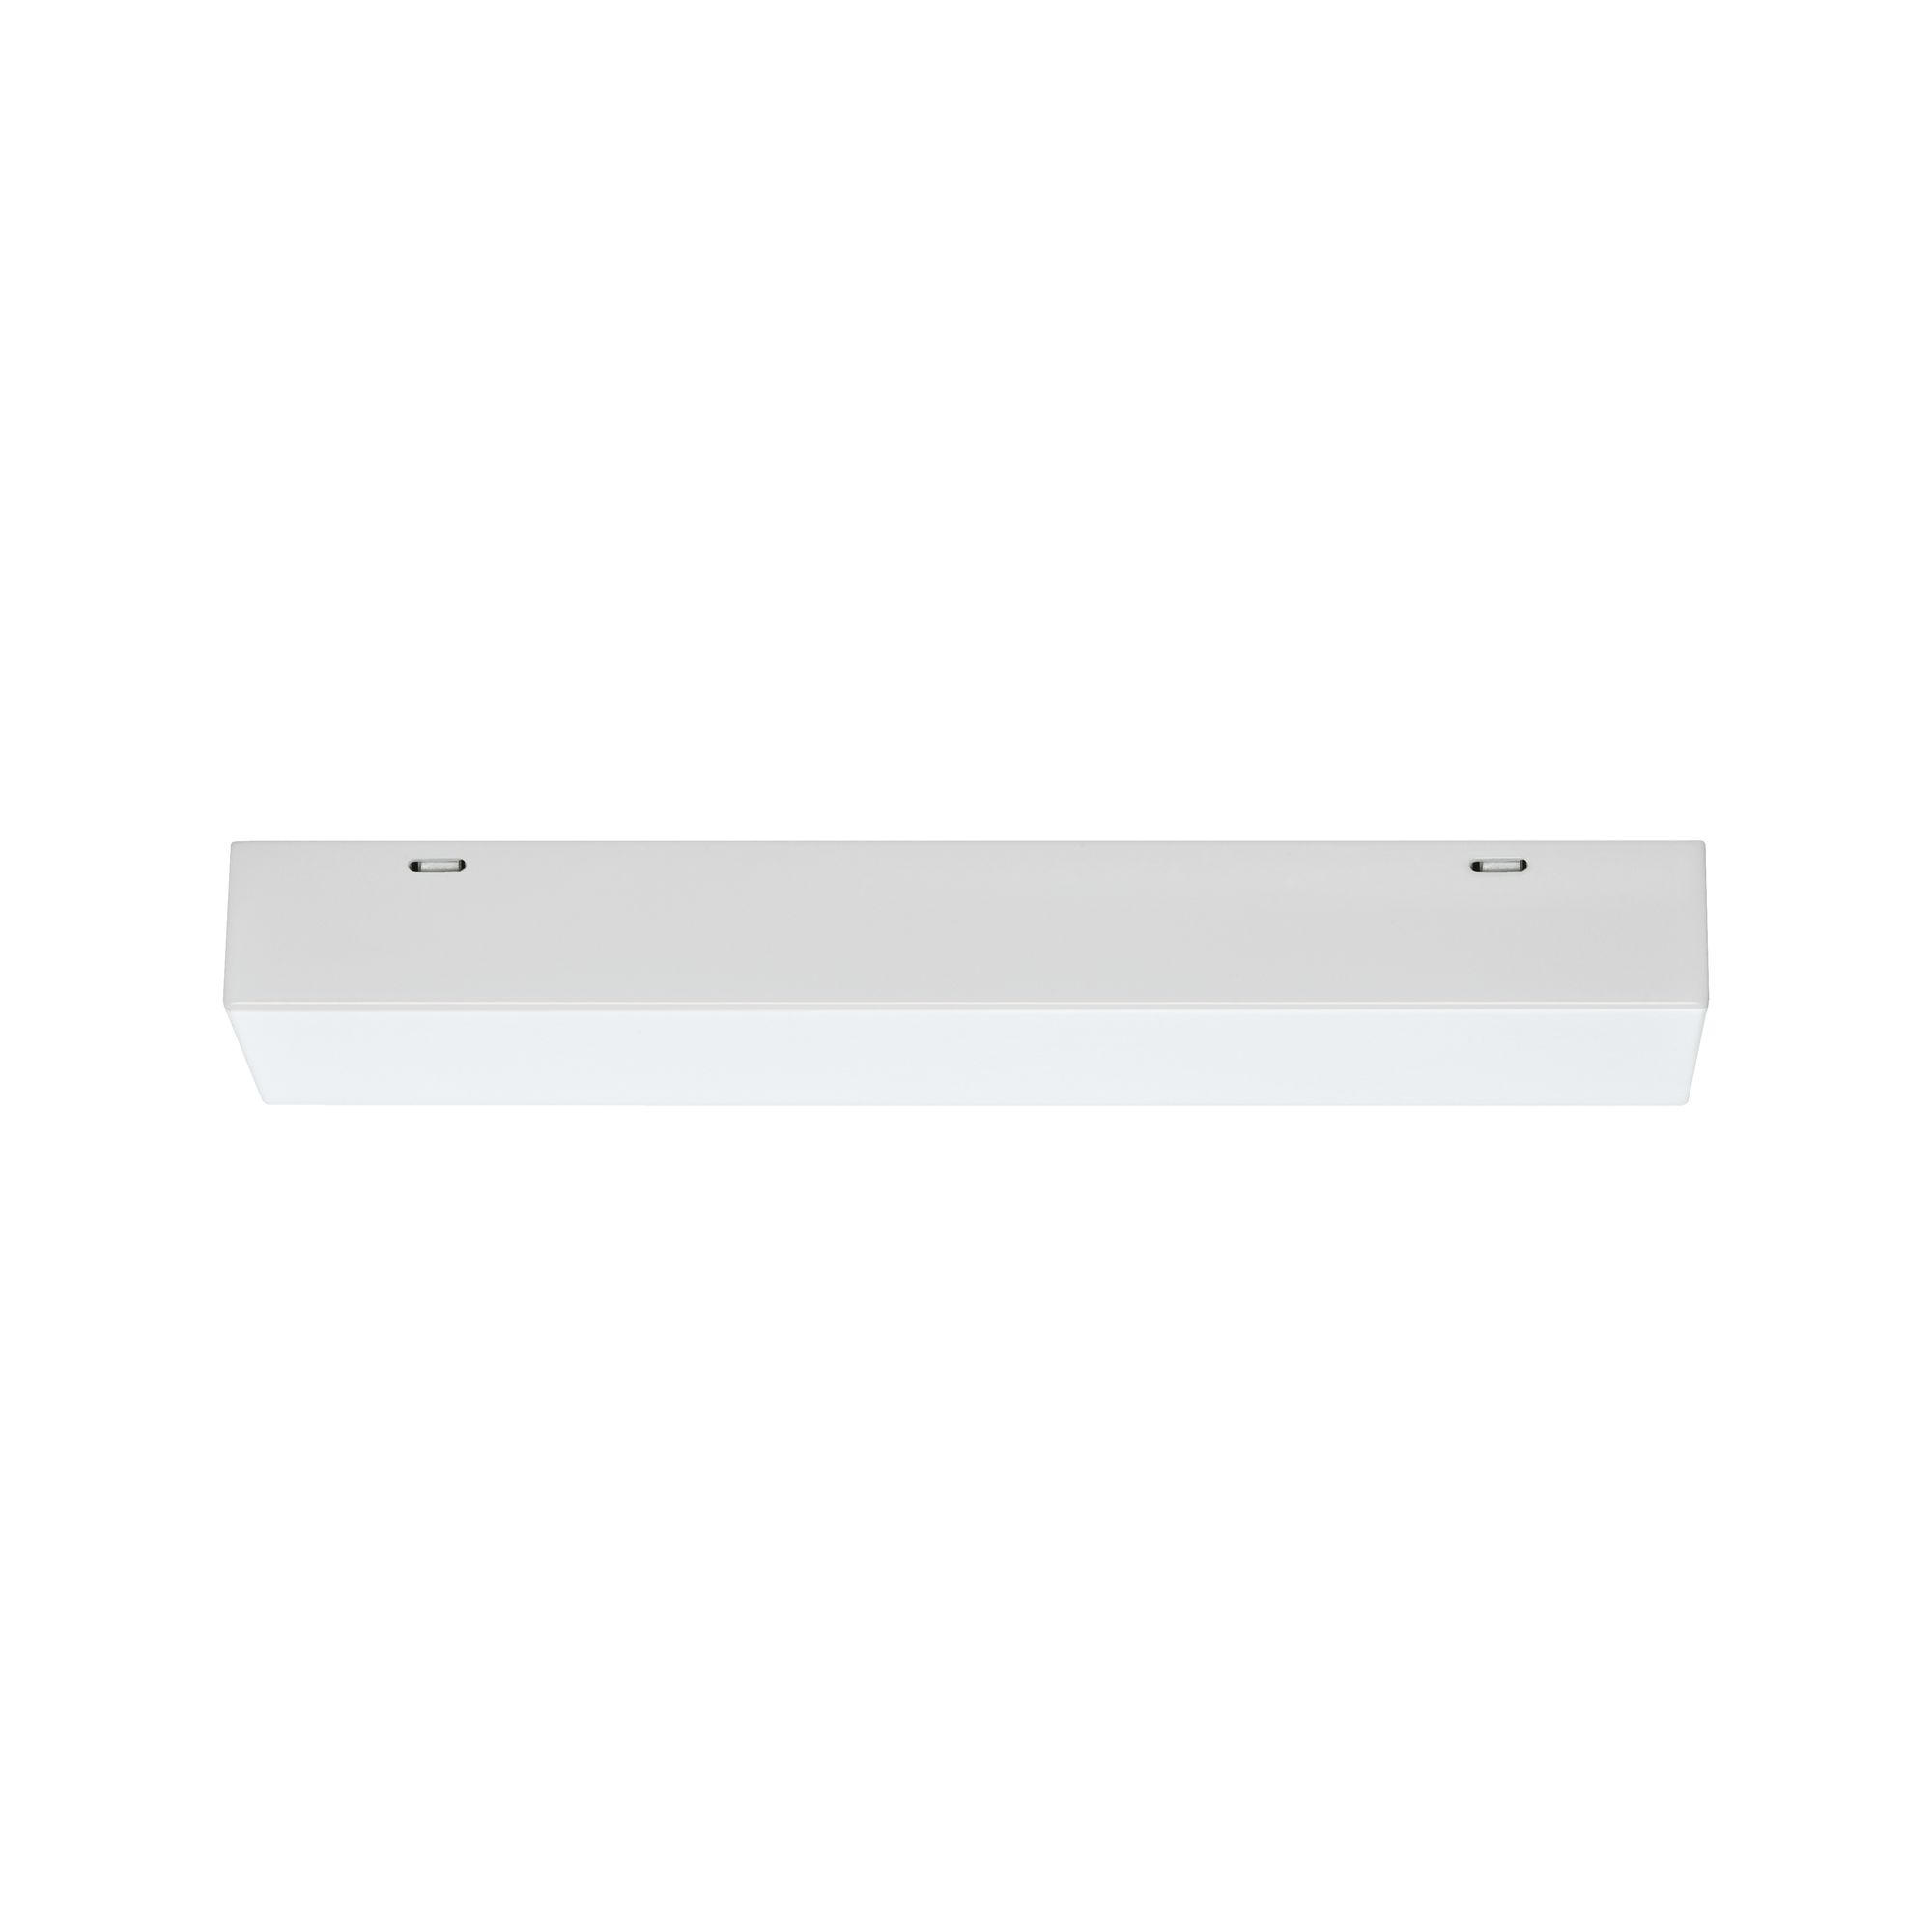 SCHIENENSYSTEM-EINSPEISER   - Weiß, Design, Metall (20,5/2,7/4,5cm) - Paulmann